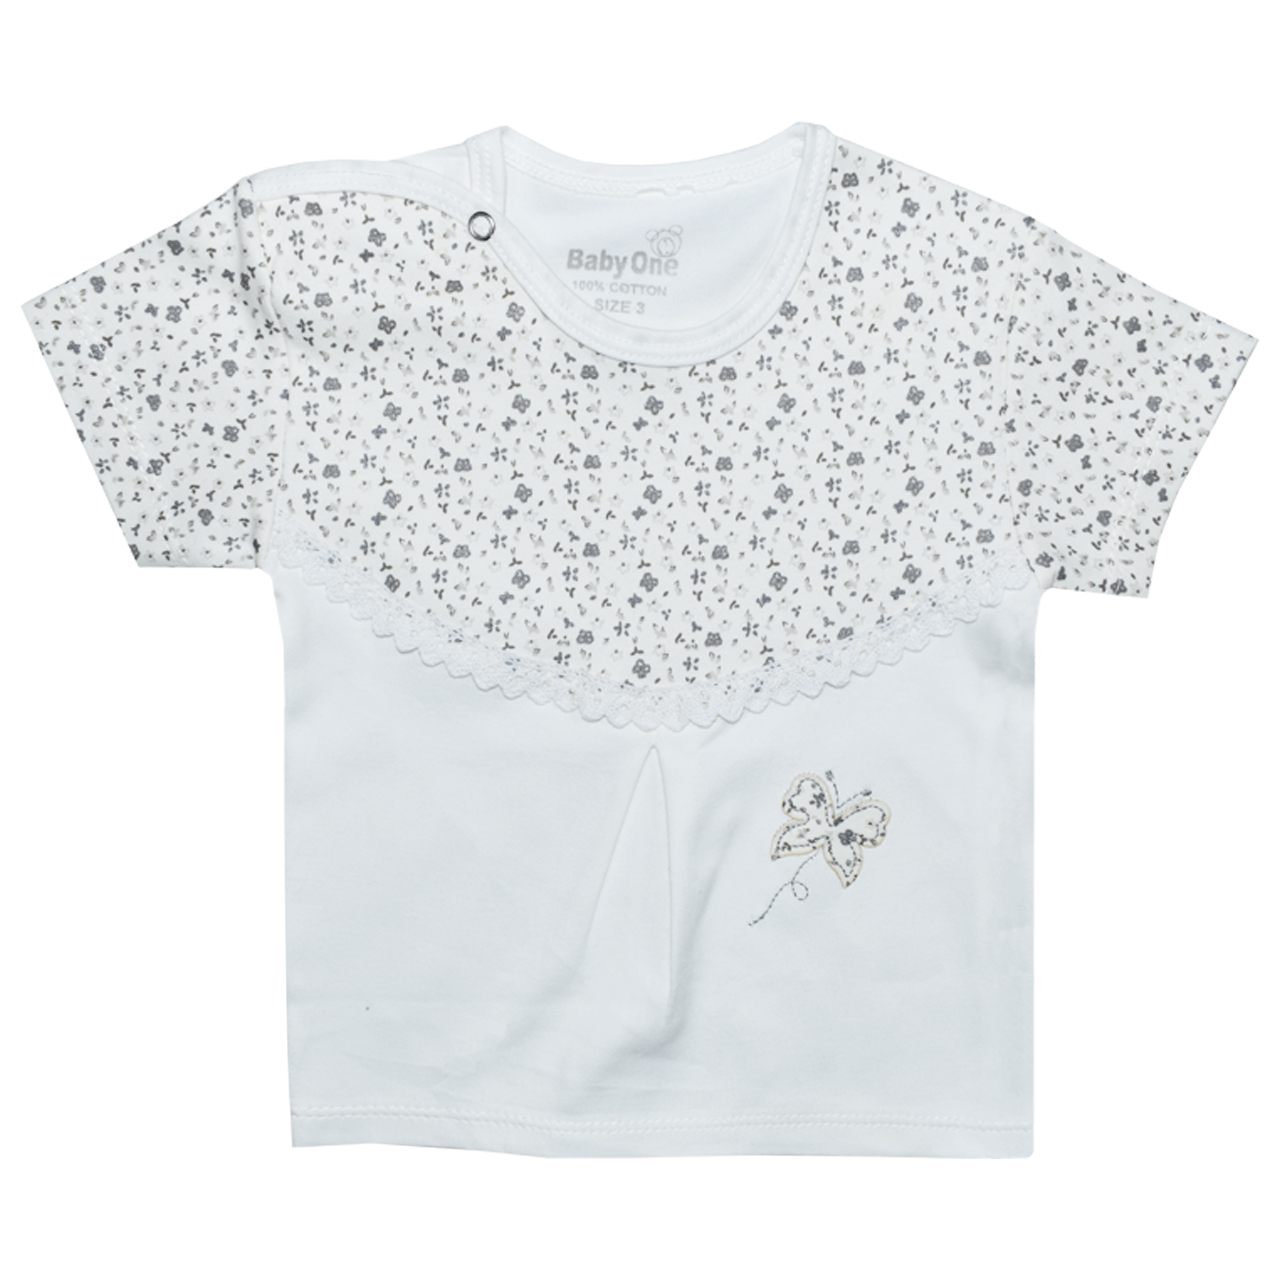 ست تی شرت و شلوار نوزادی بی بی وان مدل پروانه کد 3 -  - 5